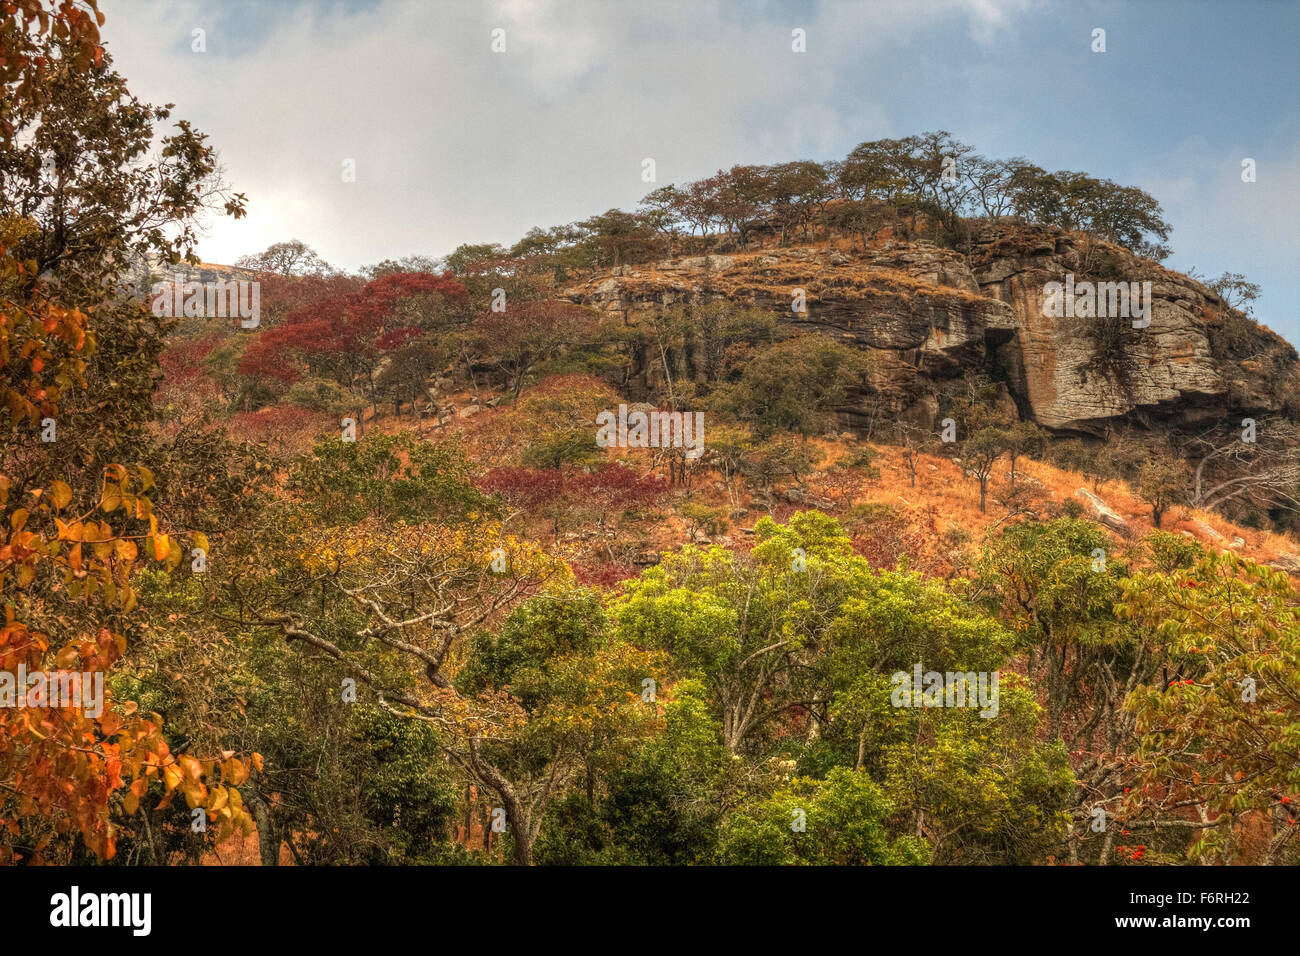 Farbenfrohe neue Laub der Bäume auf einem Hügel im Kiefer Plantage von Chongoni Wald in der Nähe von Flugfeld, Malawi, Afrika Stockfoto